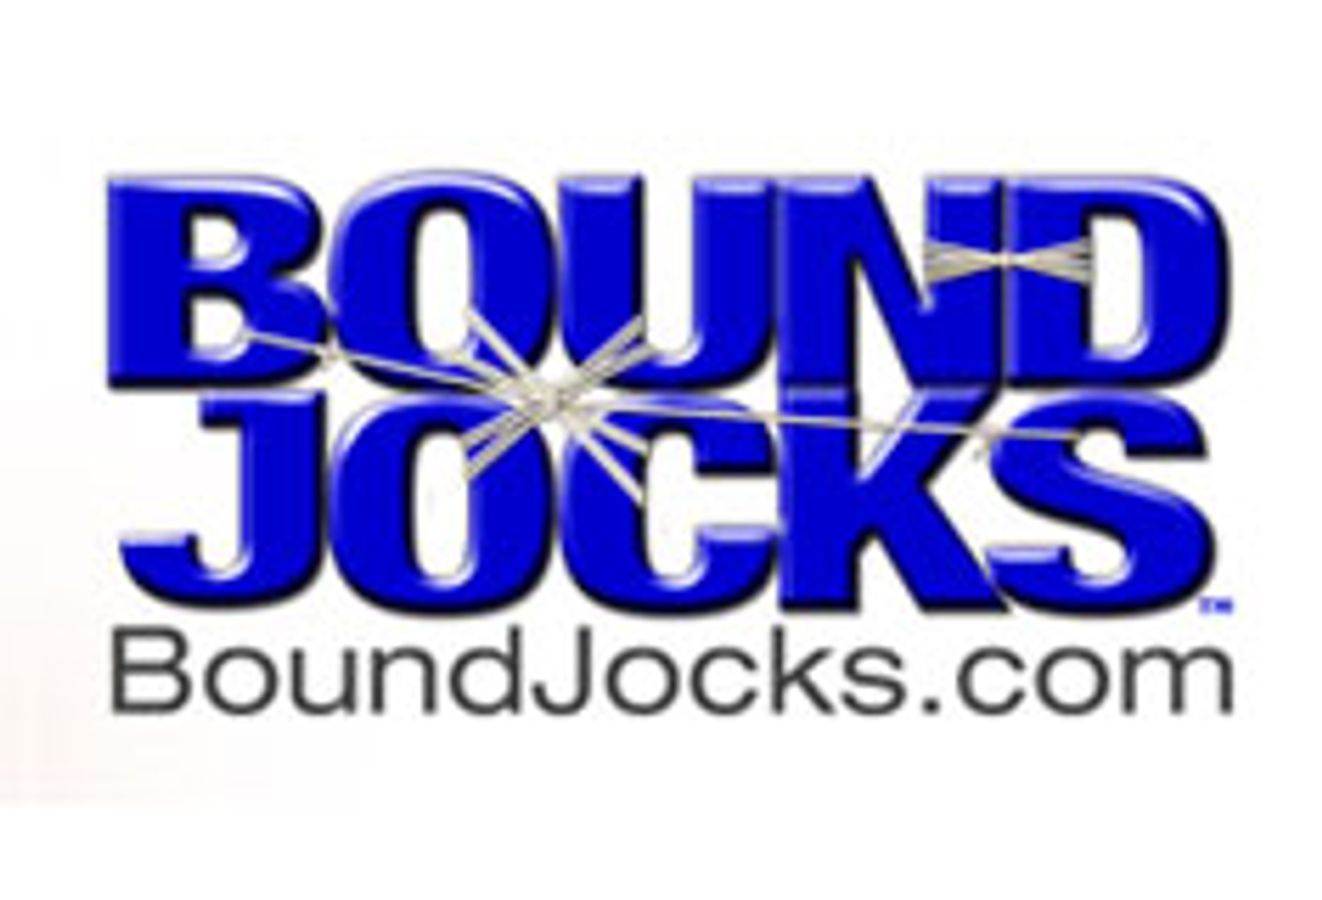 BoundJocks.com